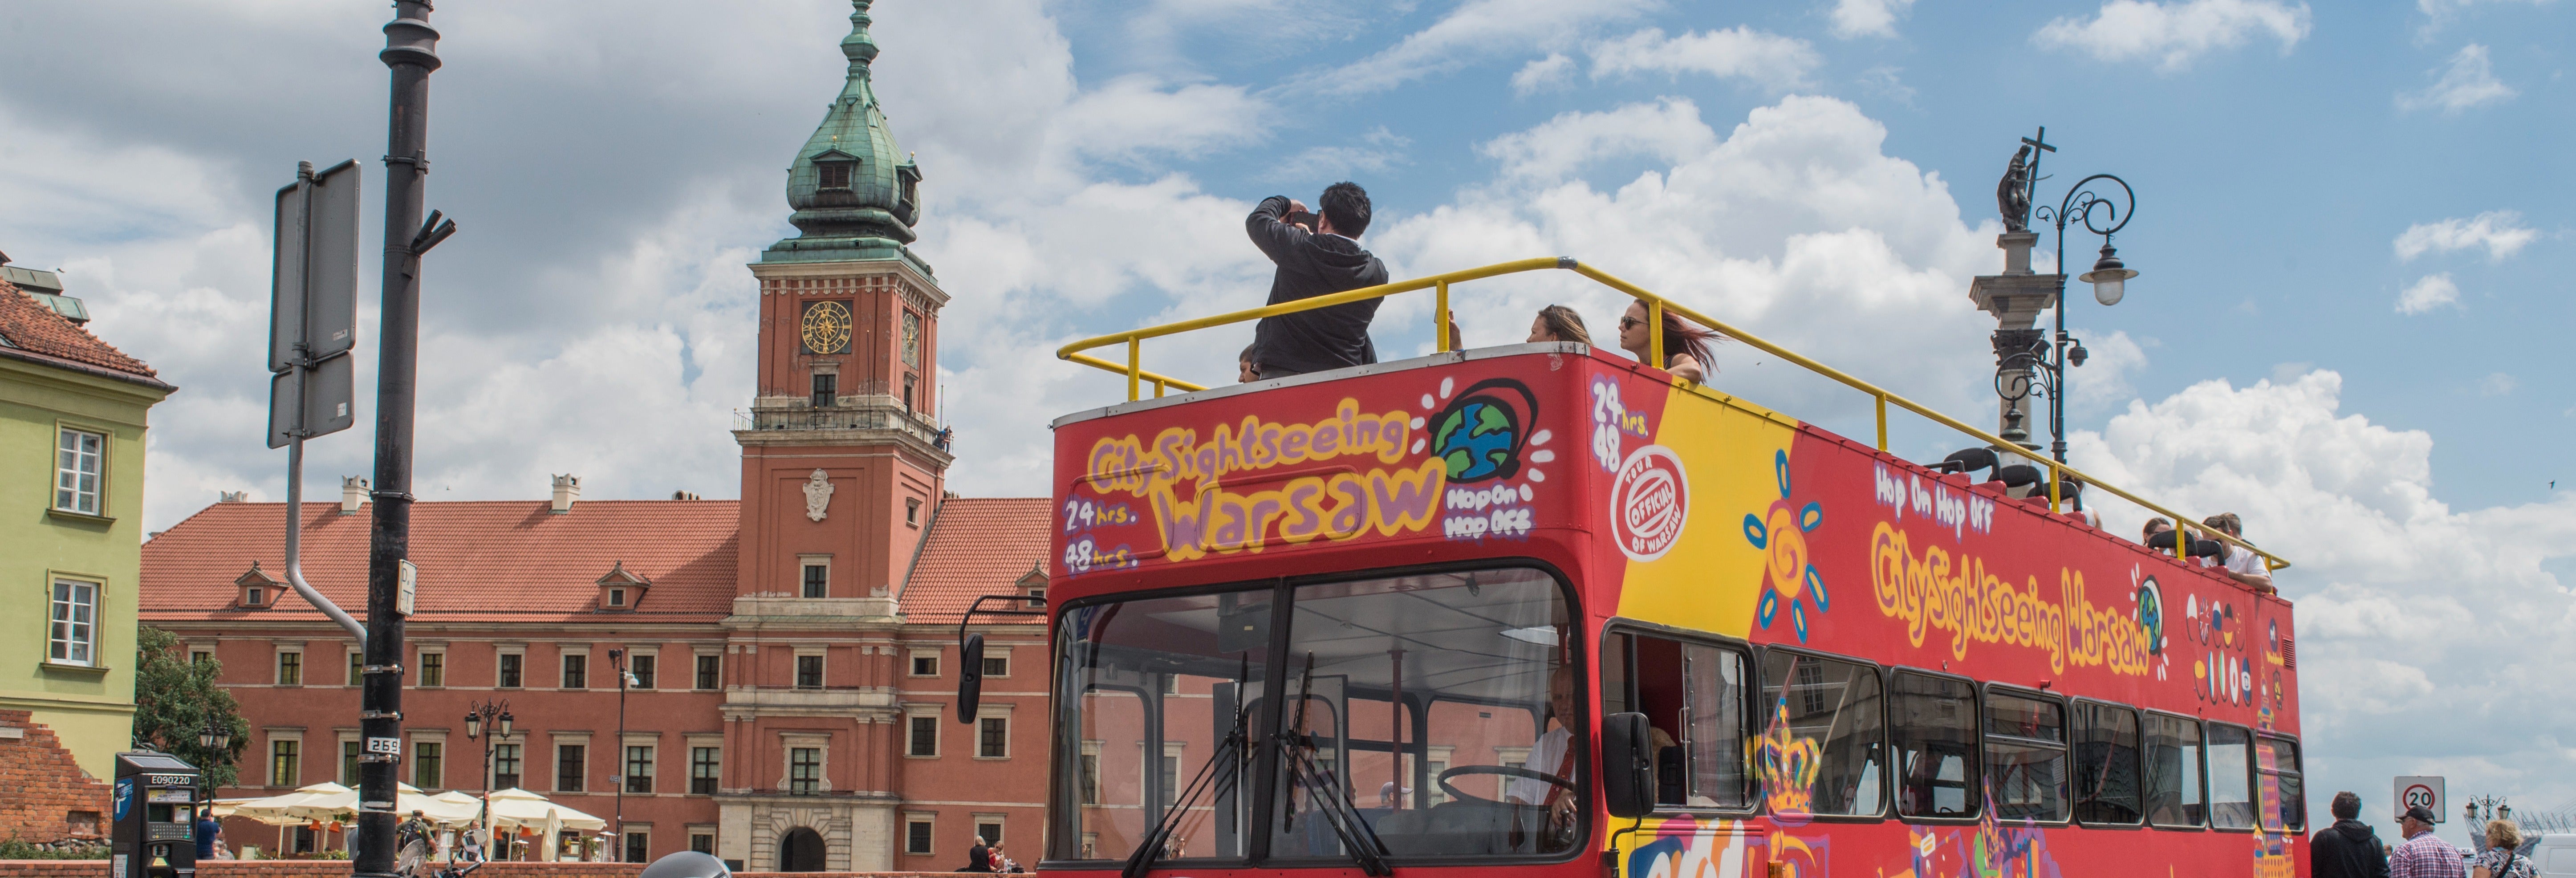 Autobus turistico di Varsavia